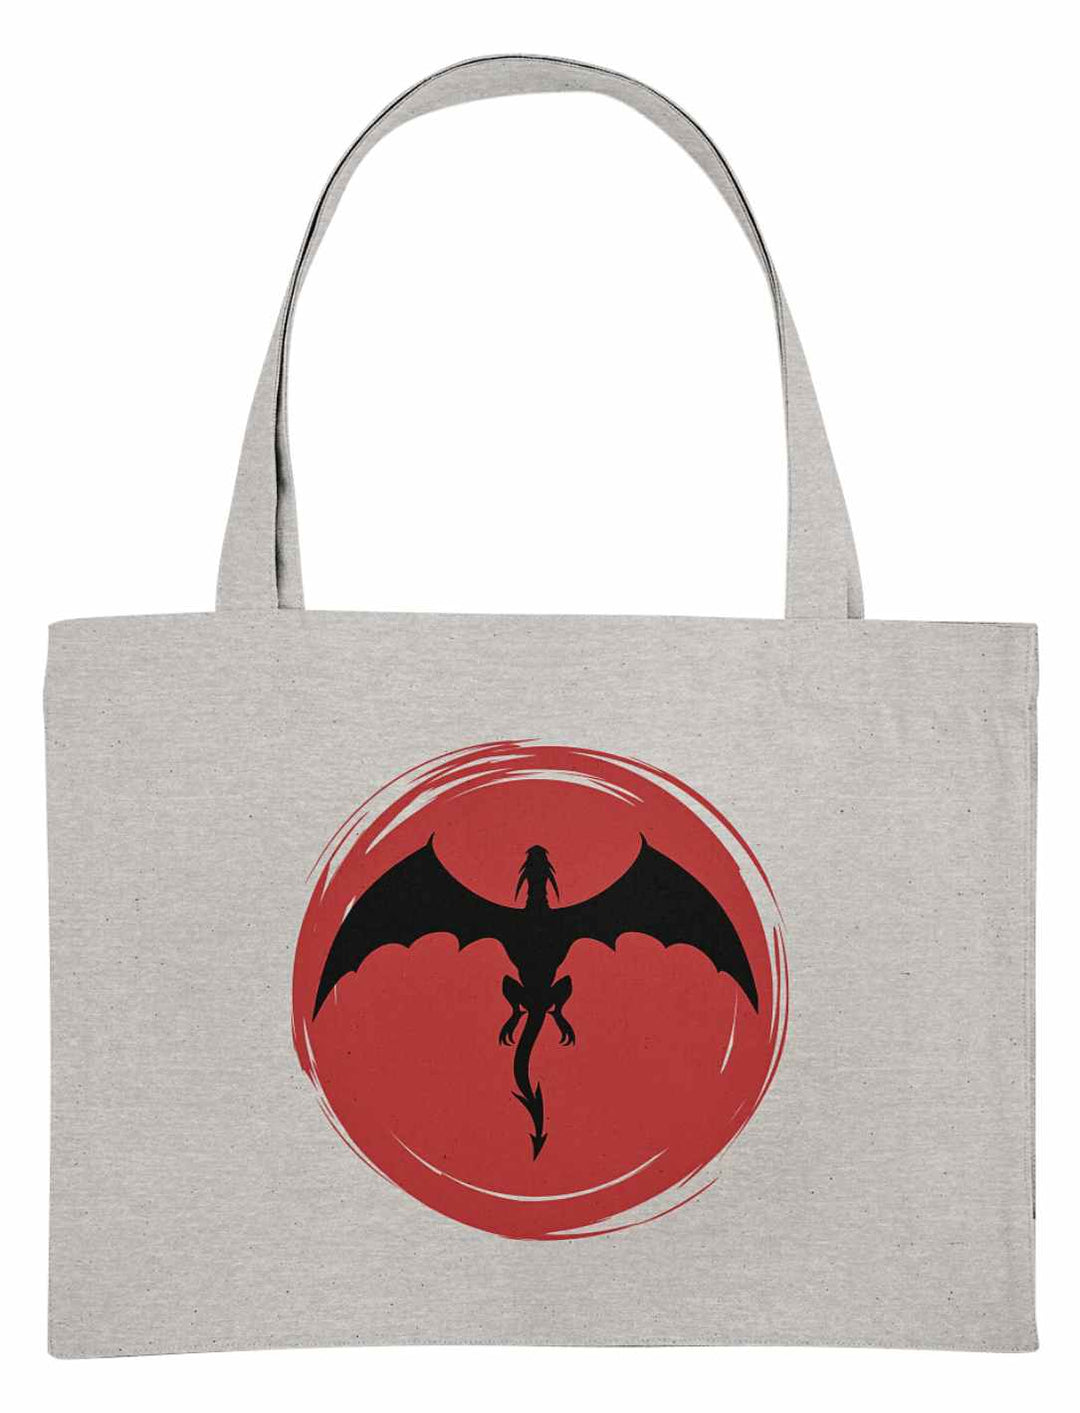 Graue 'Saga of the Dragon' Organic Shopping Bag auf neutralem Hintergrund, verbindet Nachhaltigkeit mit mystischer Eleganz.